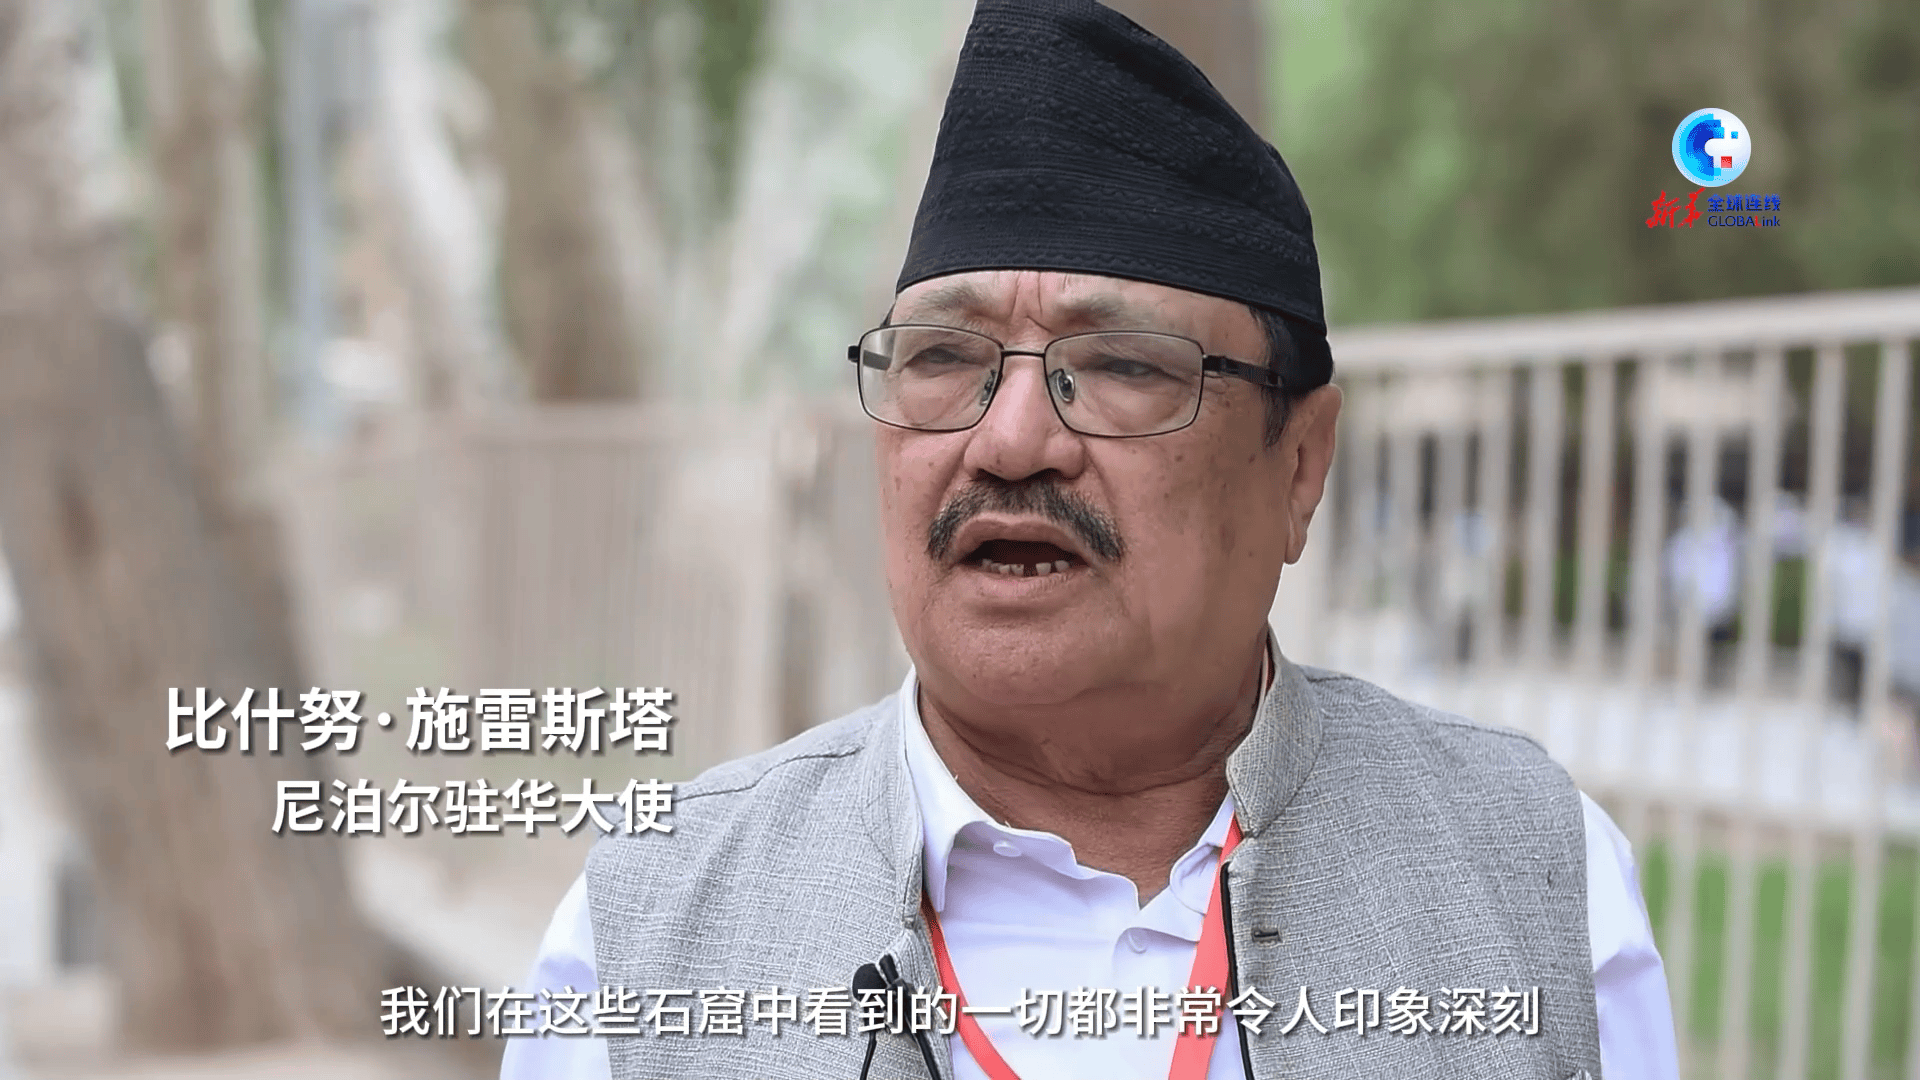 尼泊尔驻华大使 千年莫高窟的灿烂文明让人流连忘返 全球连线